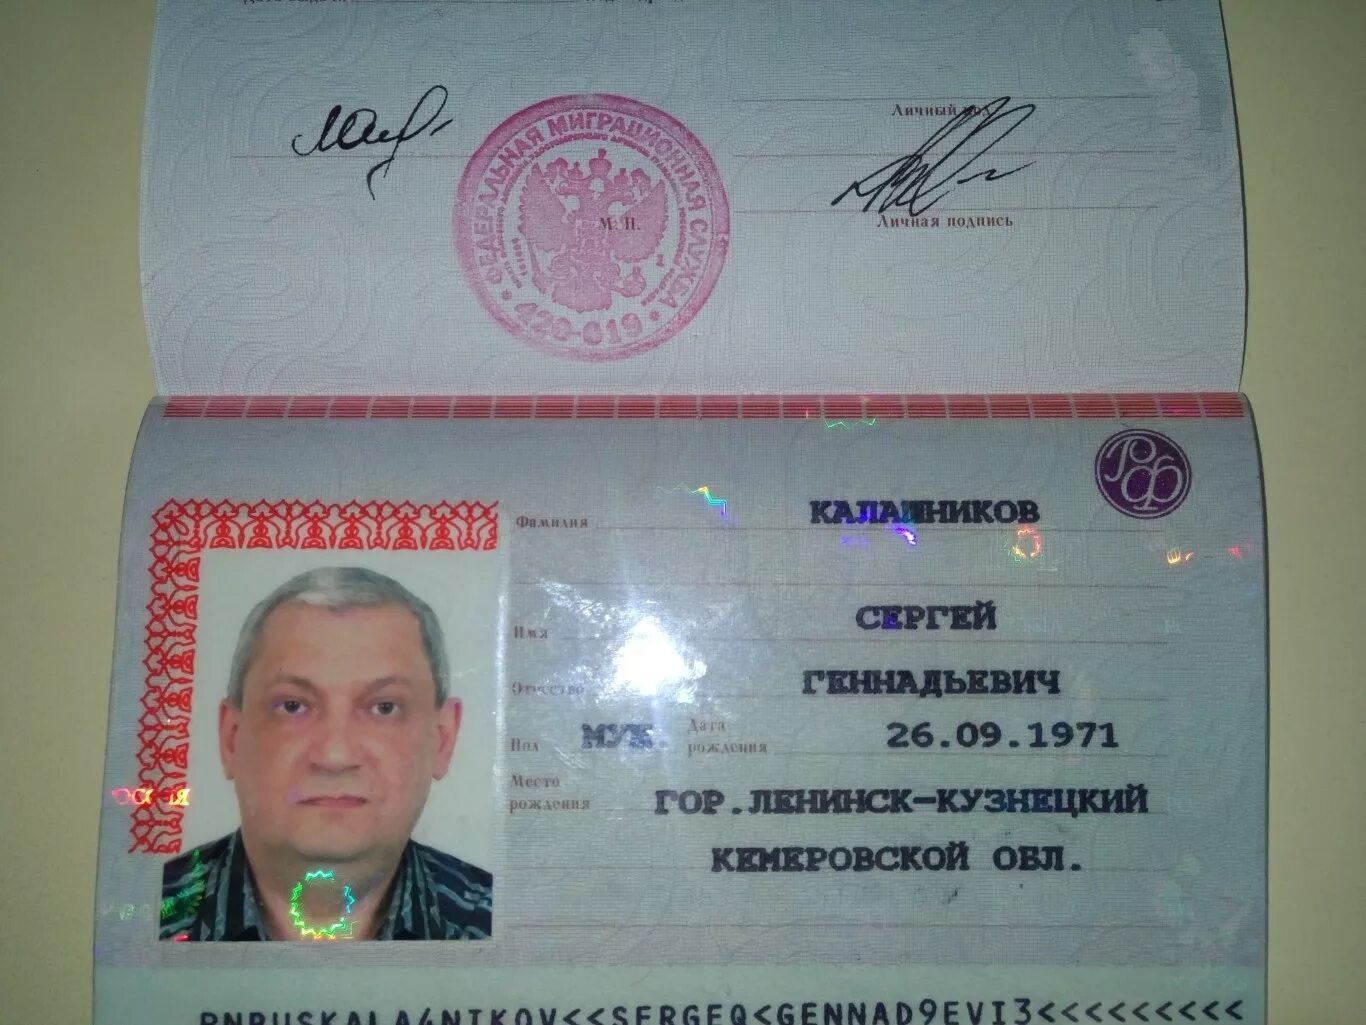 Паспортное имя. Фотографии паспортных данных.